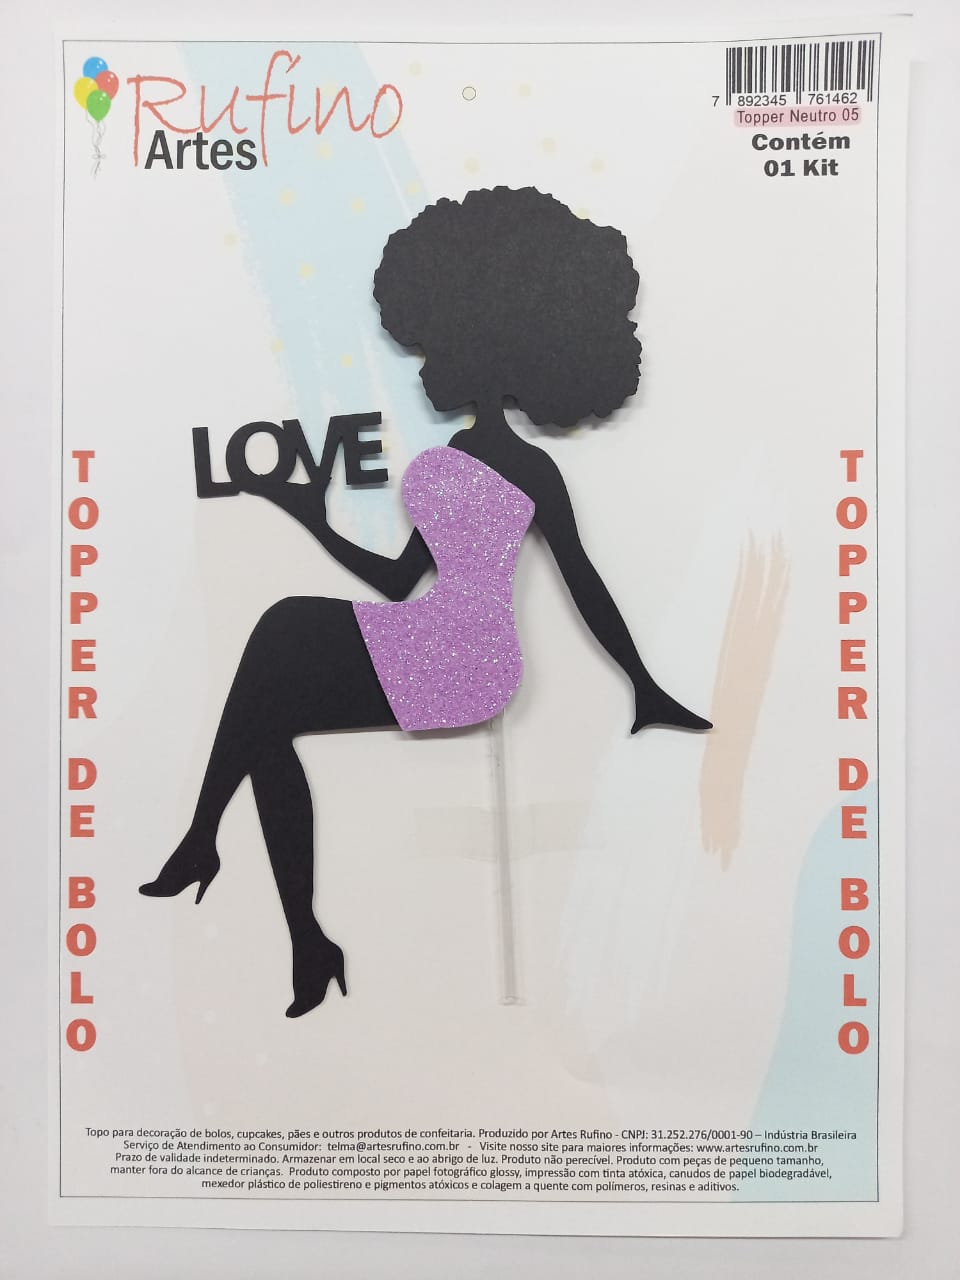 Topo de Bolo Baby Afro Lilás / Artes Rufino ®